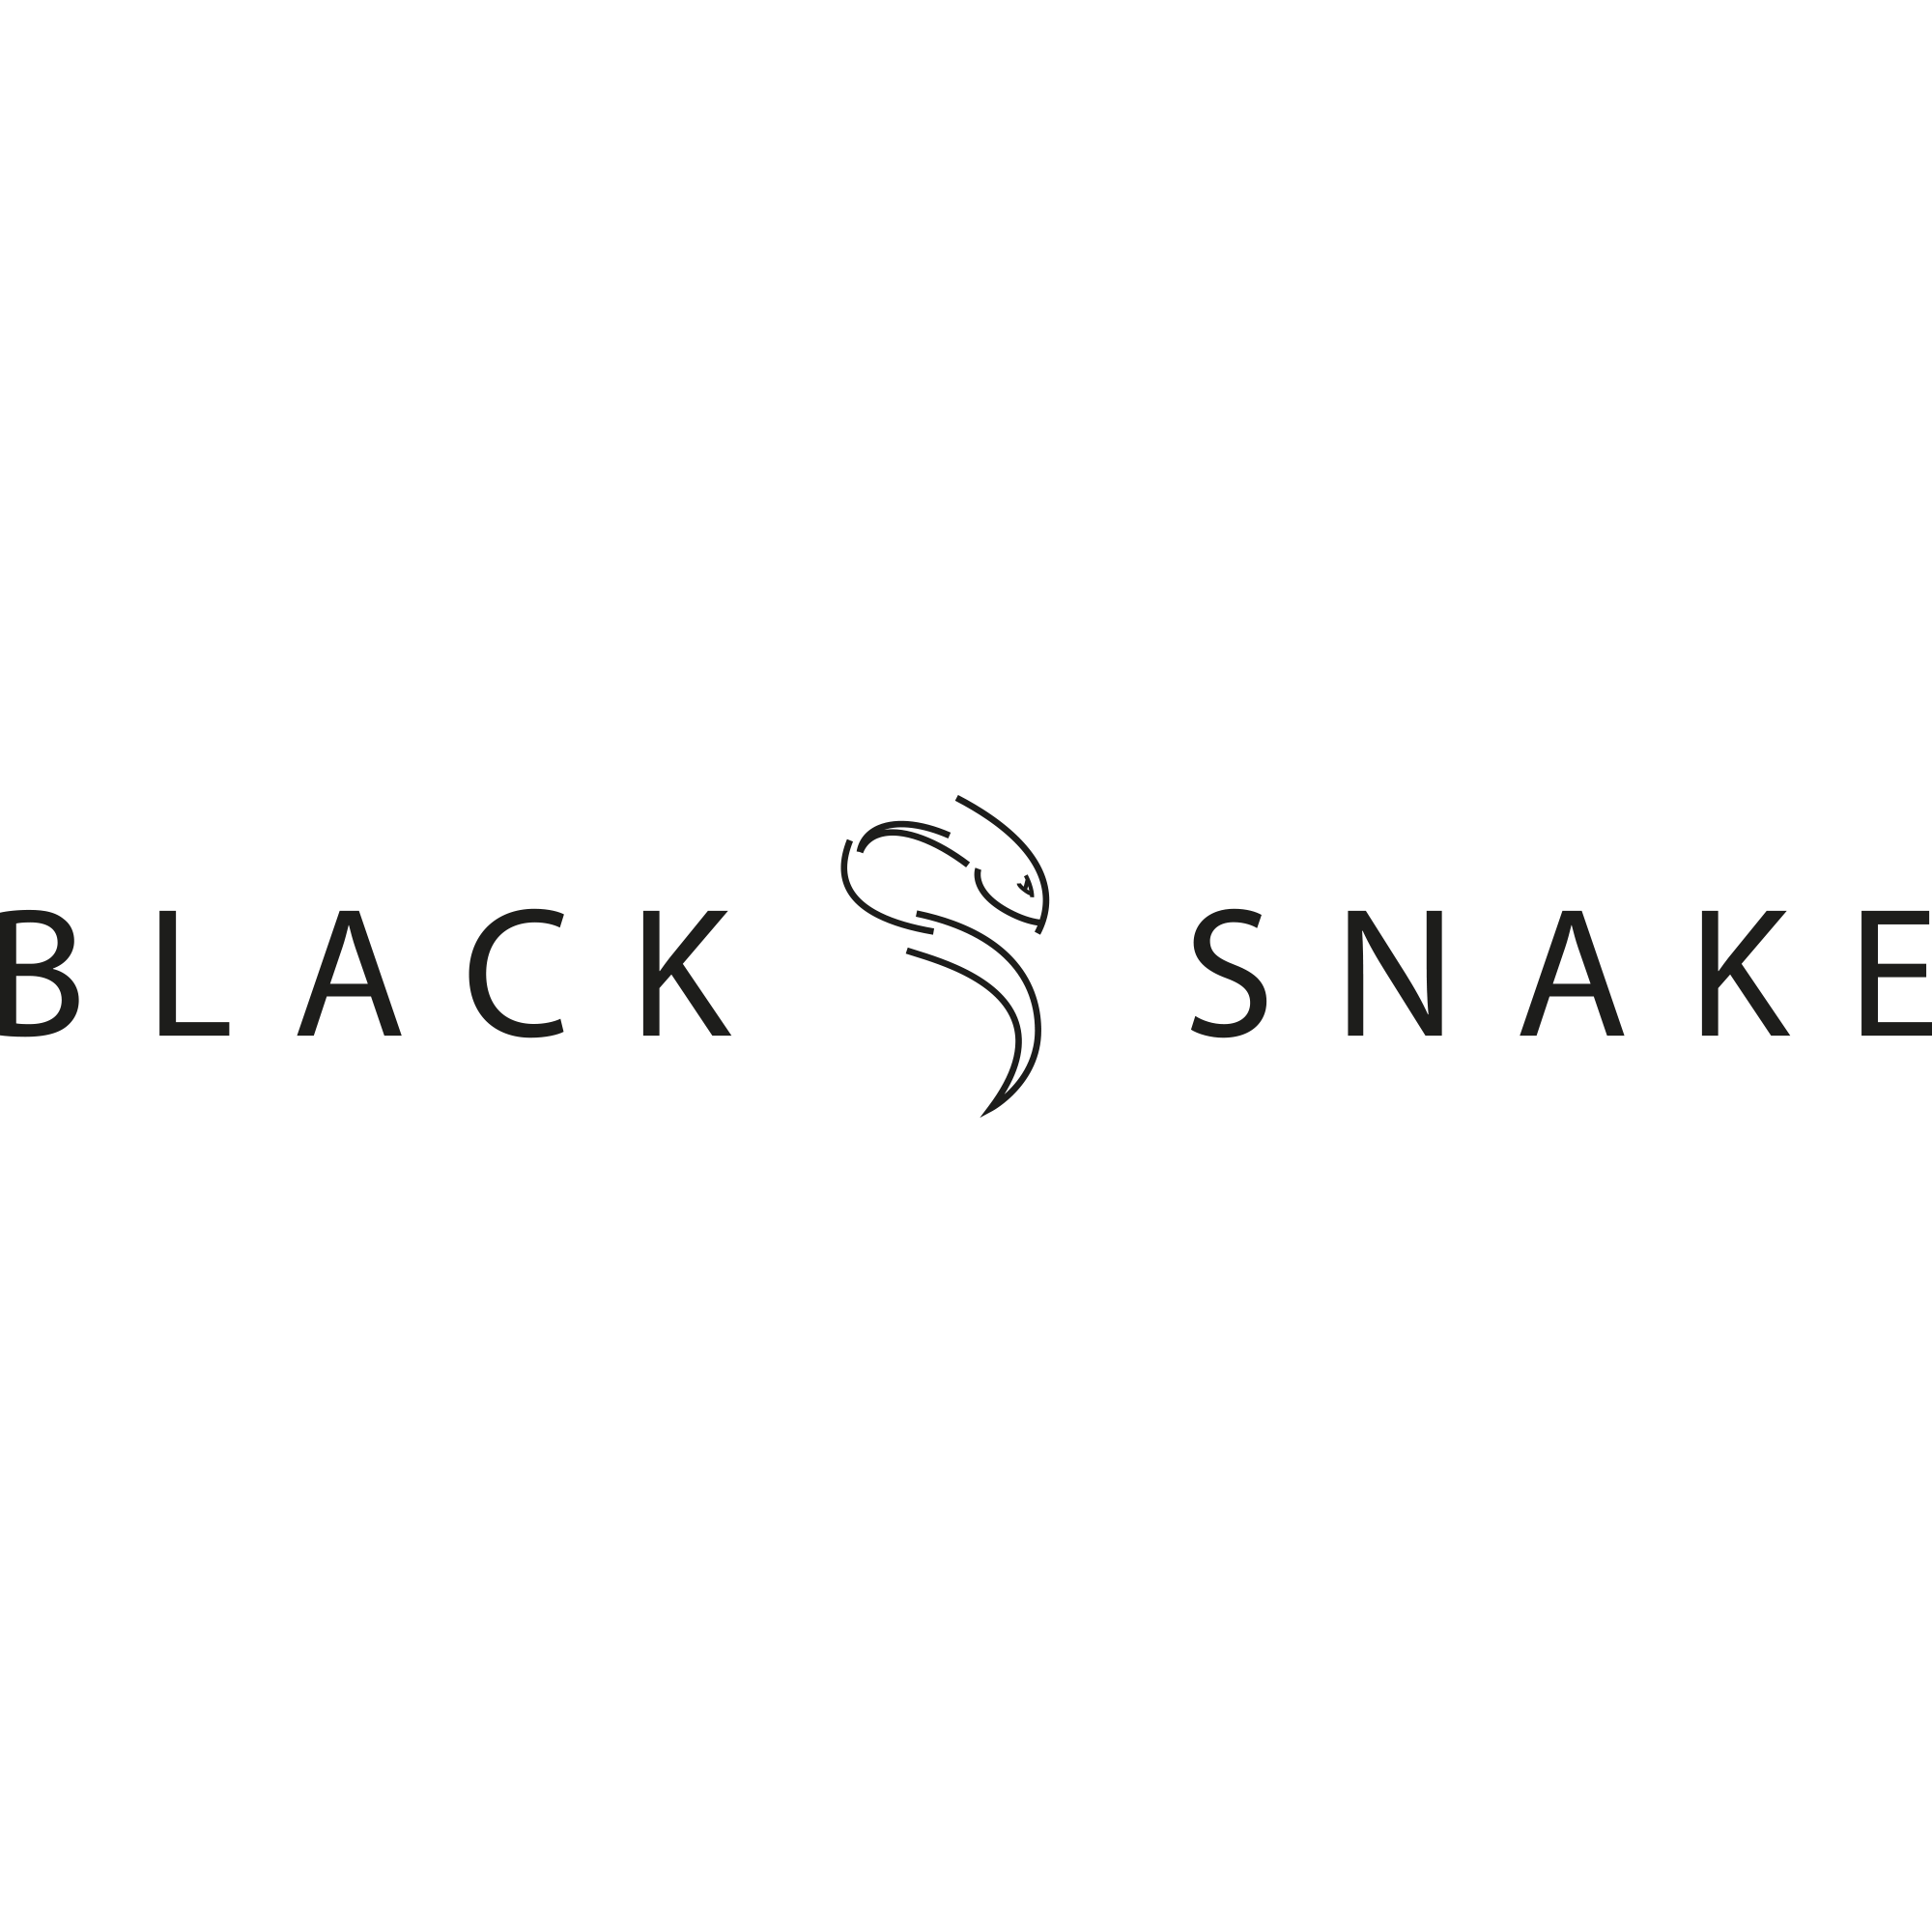 Black Snake Kochgeschirr, Teller und Essbesteck Set